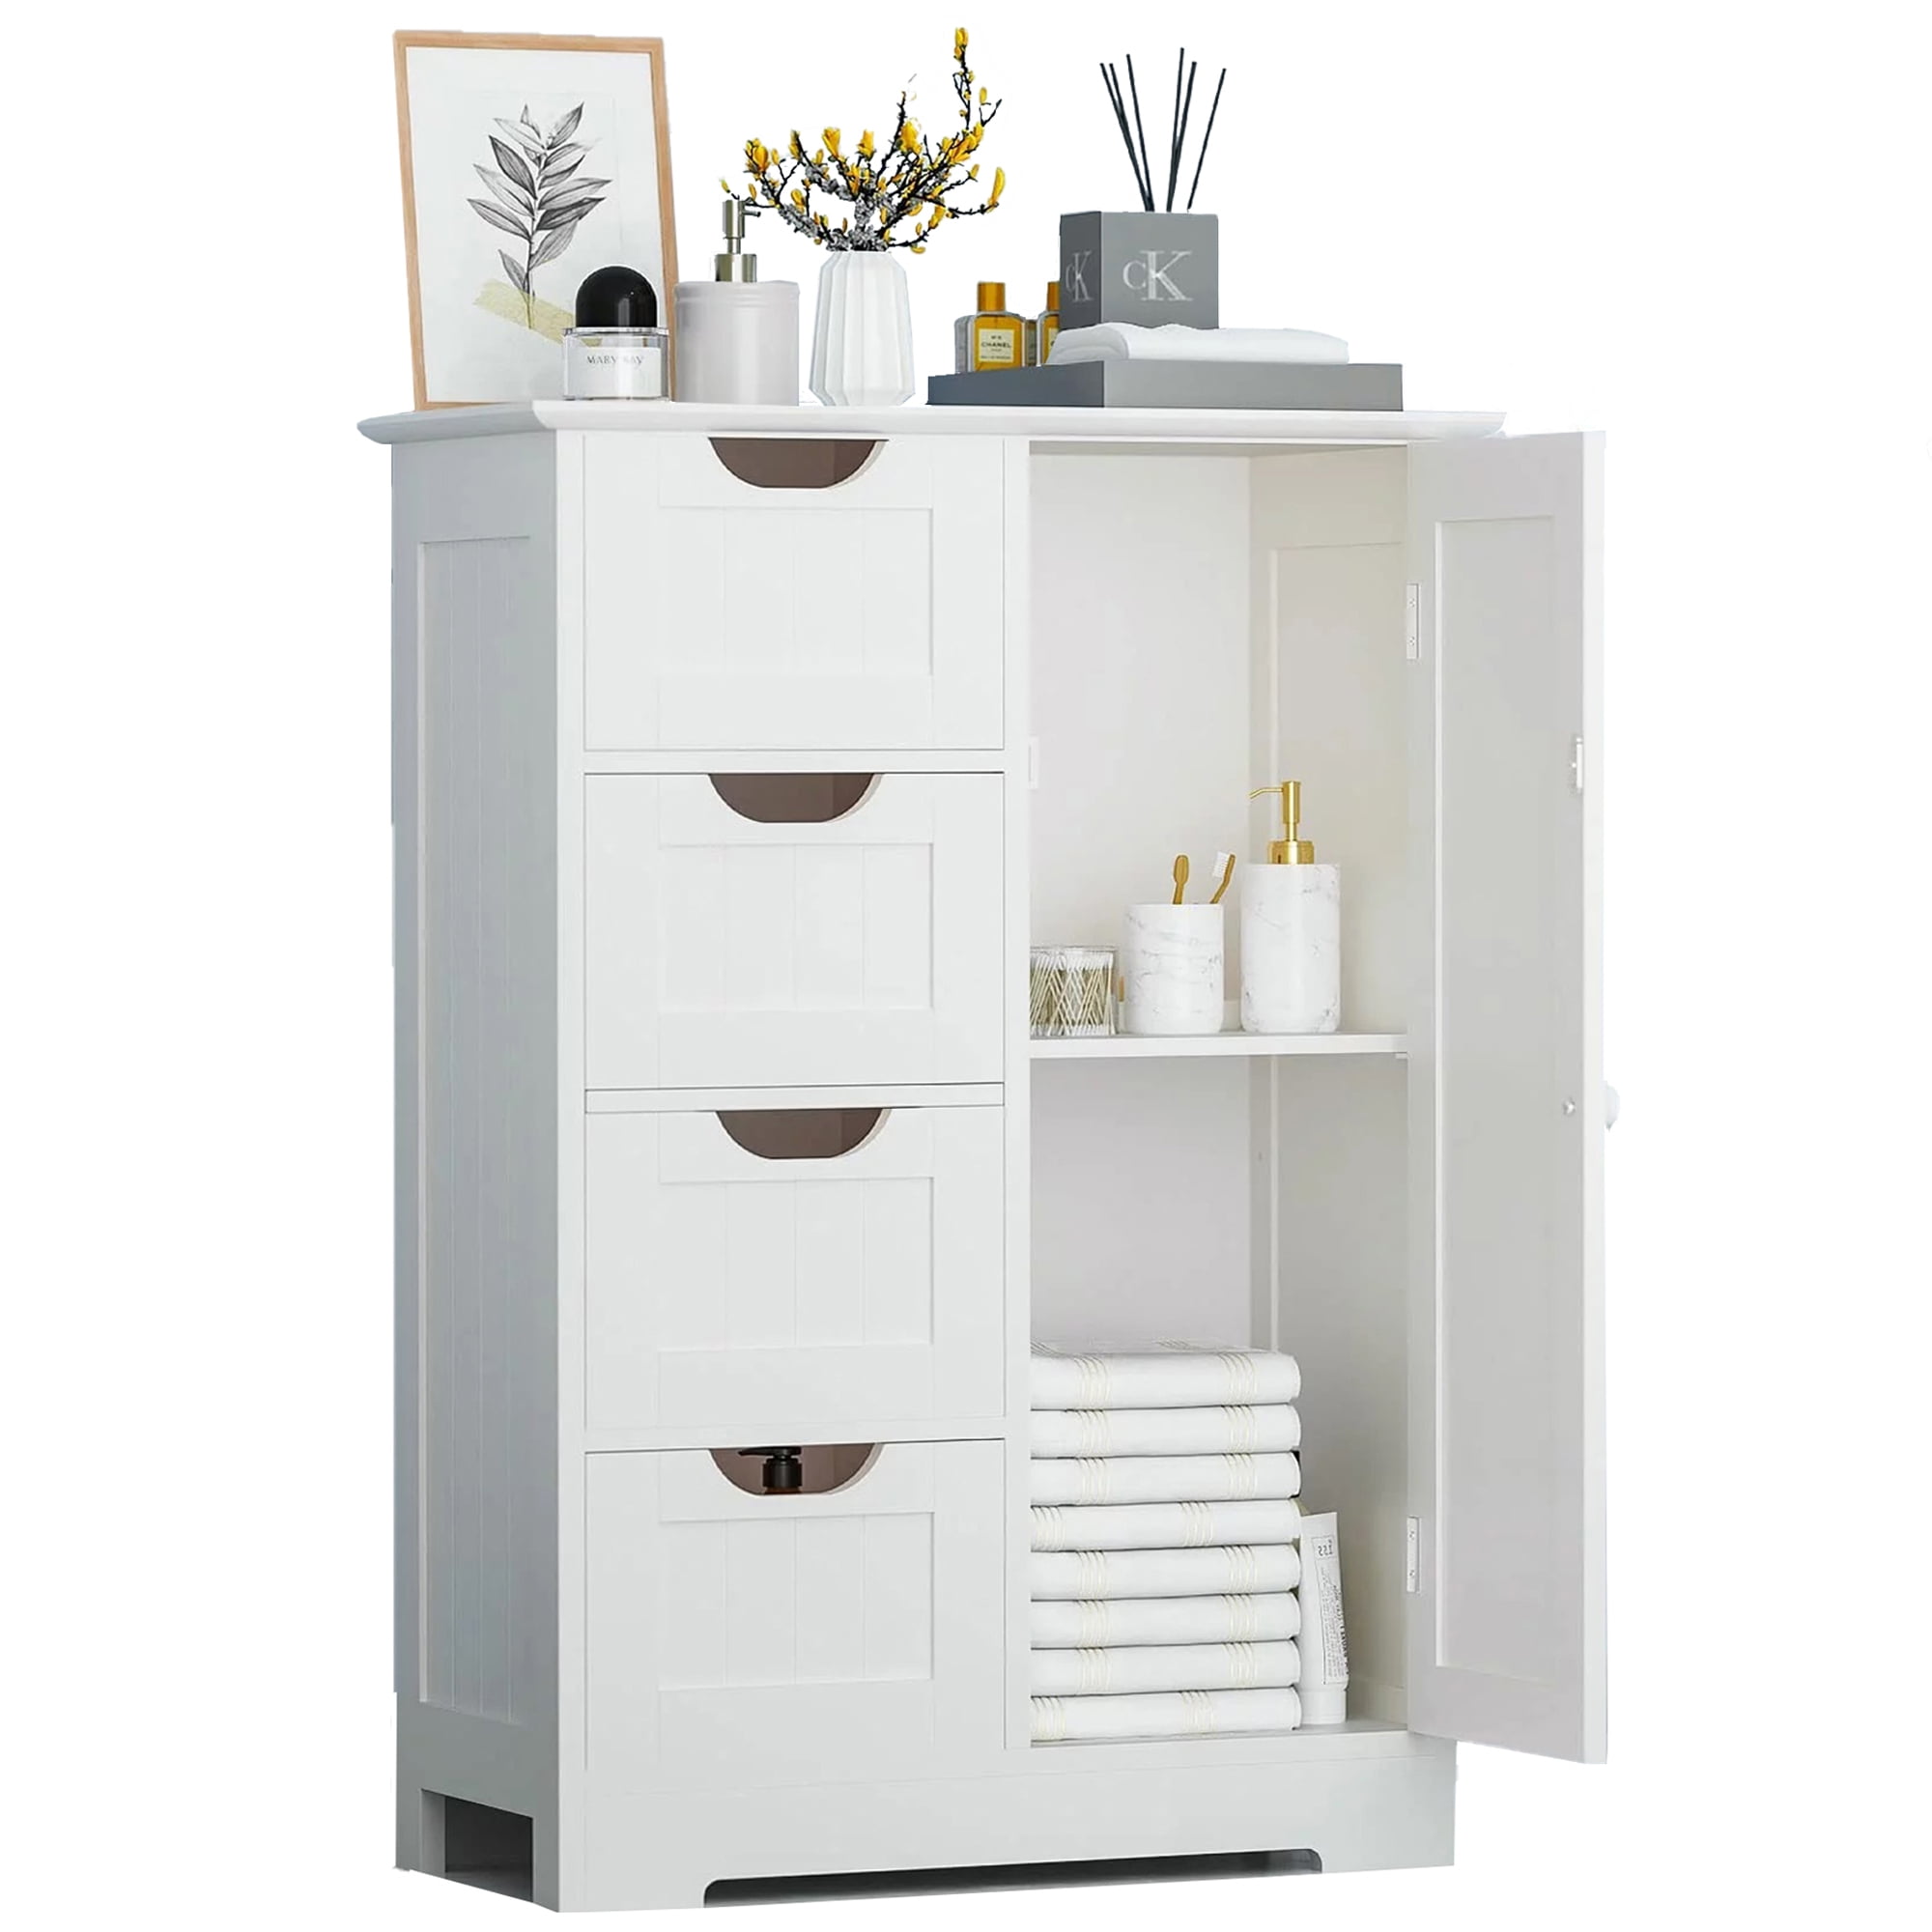 SUGIFT 4 Drawer Storage Cabinet, Wooden Bathroom Cabinet Storage